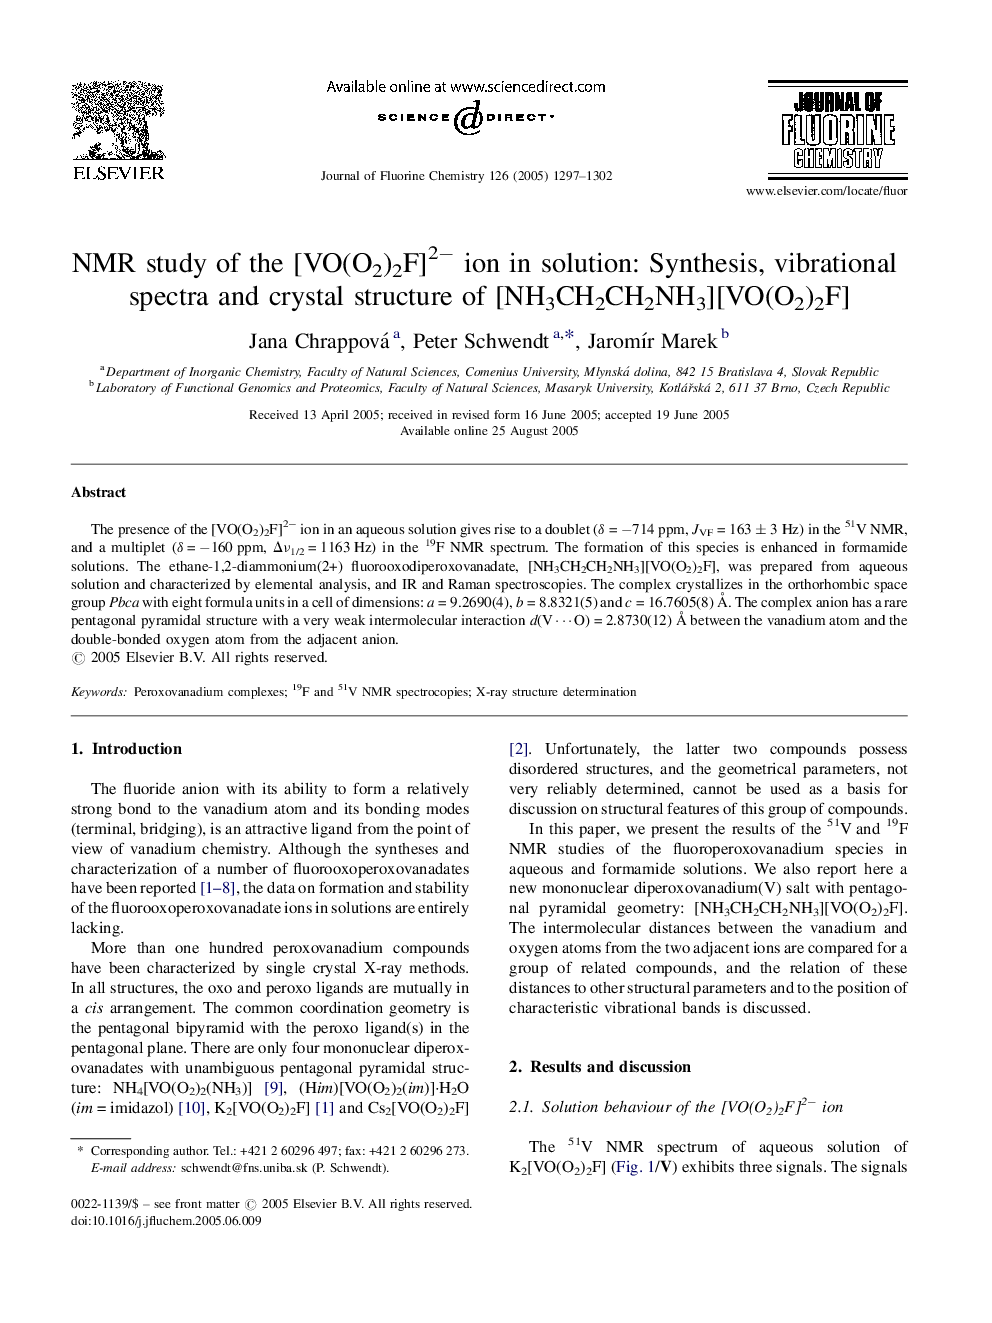 NMR study of the [VO(O2)2F]2â ion in solution: Synthesis, vibrational spectra and crystal structure of [NH3CH2CH2NH3][VO(O2)2F]